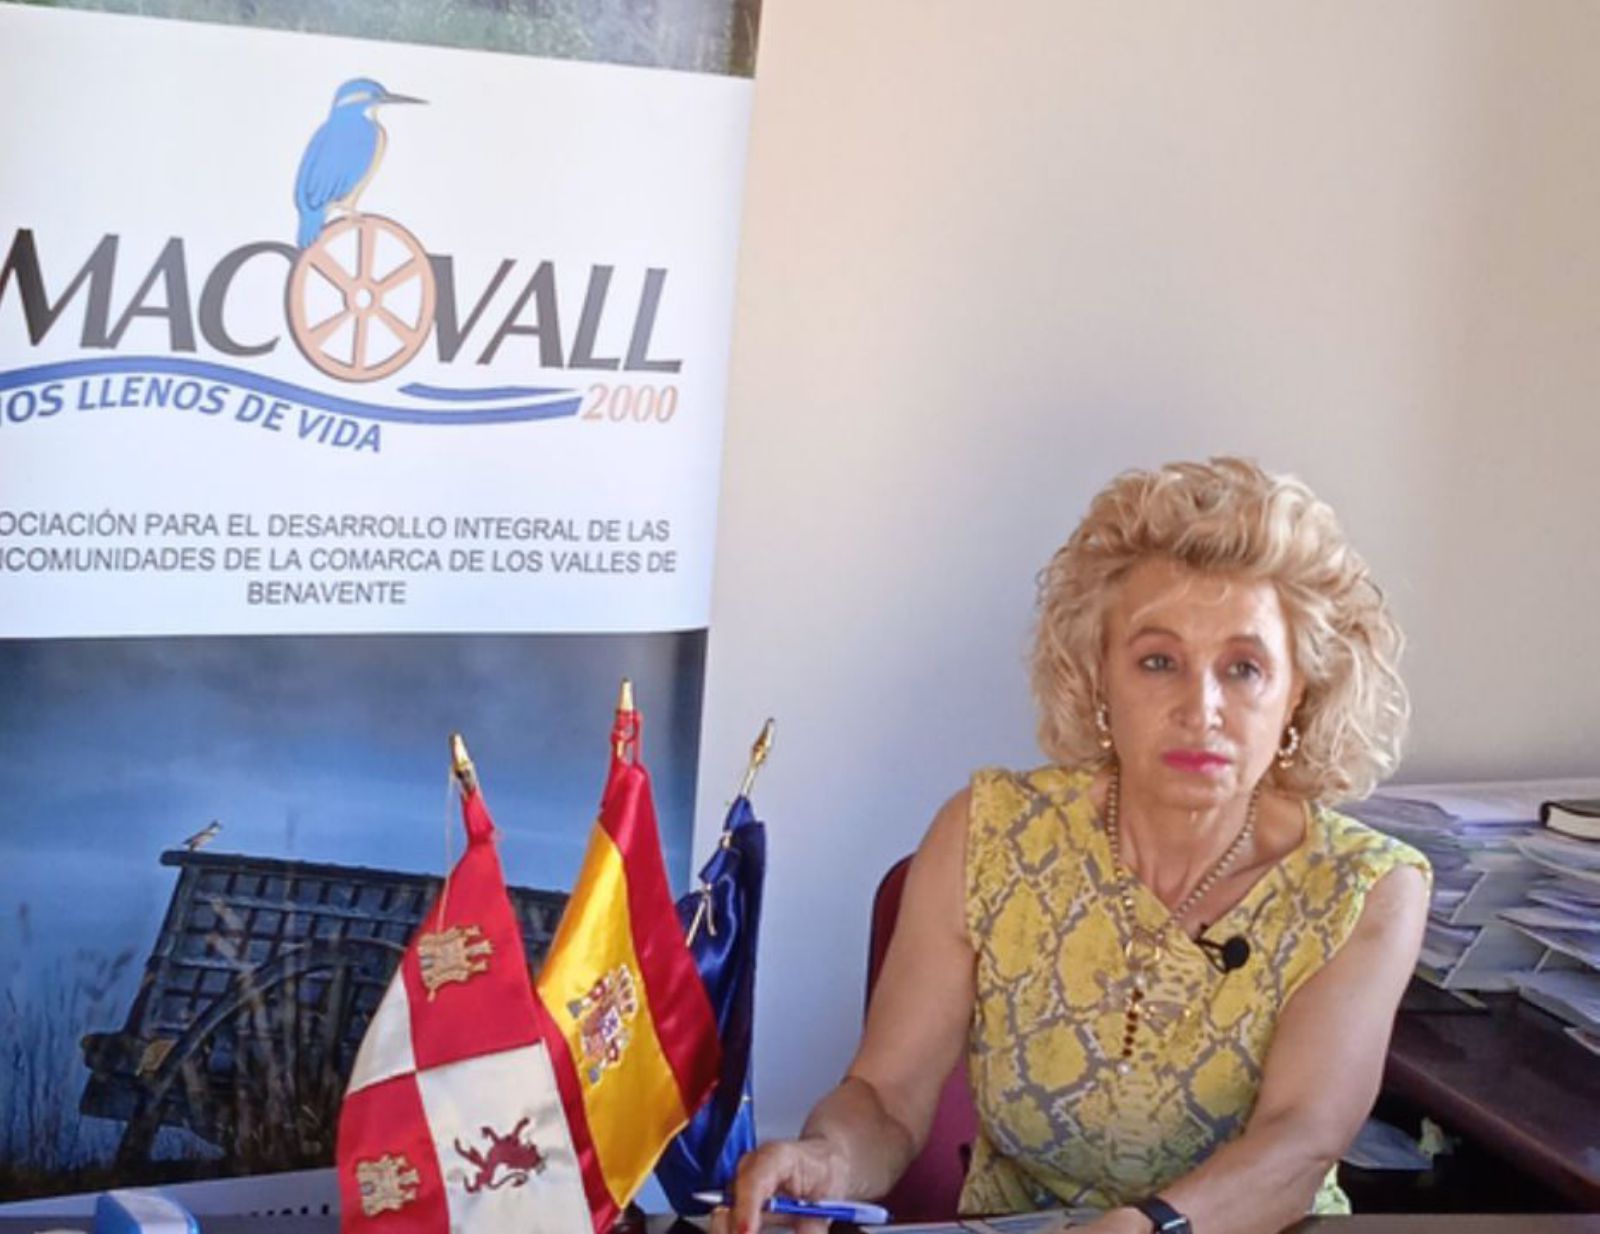 La presidenta de Macovall, Atilana Martínez, en la sede del GAL. / E. P.